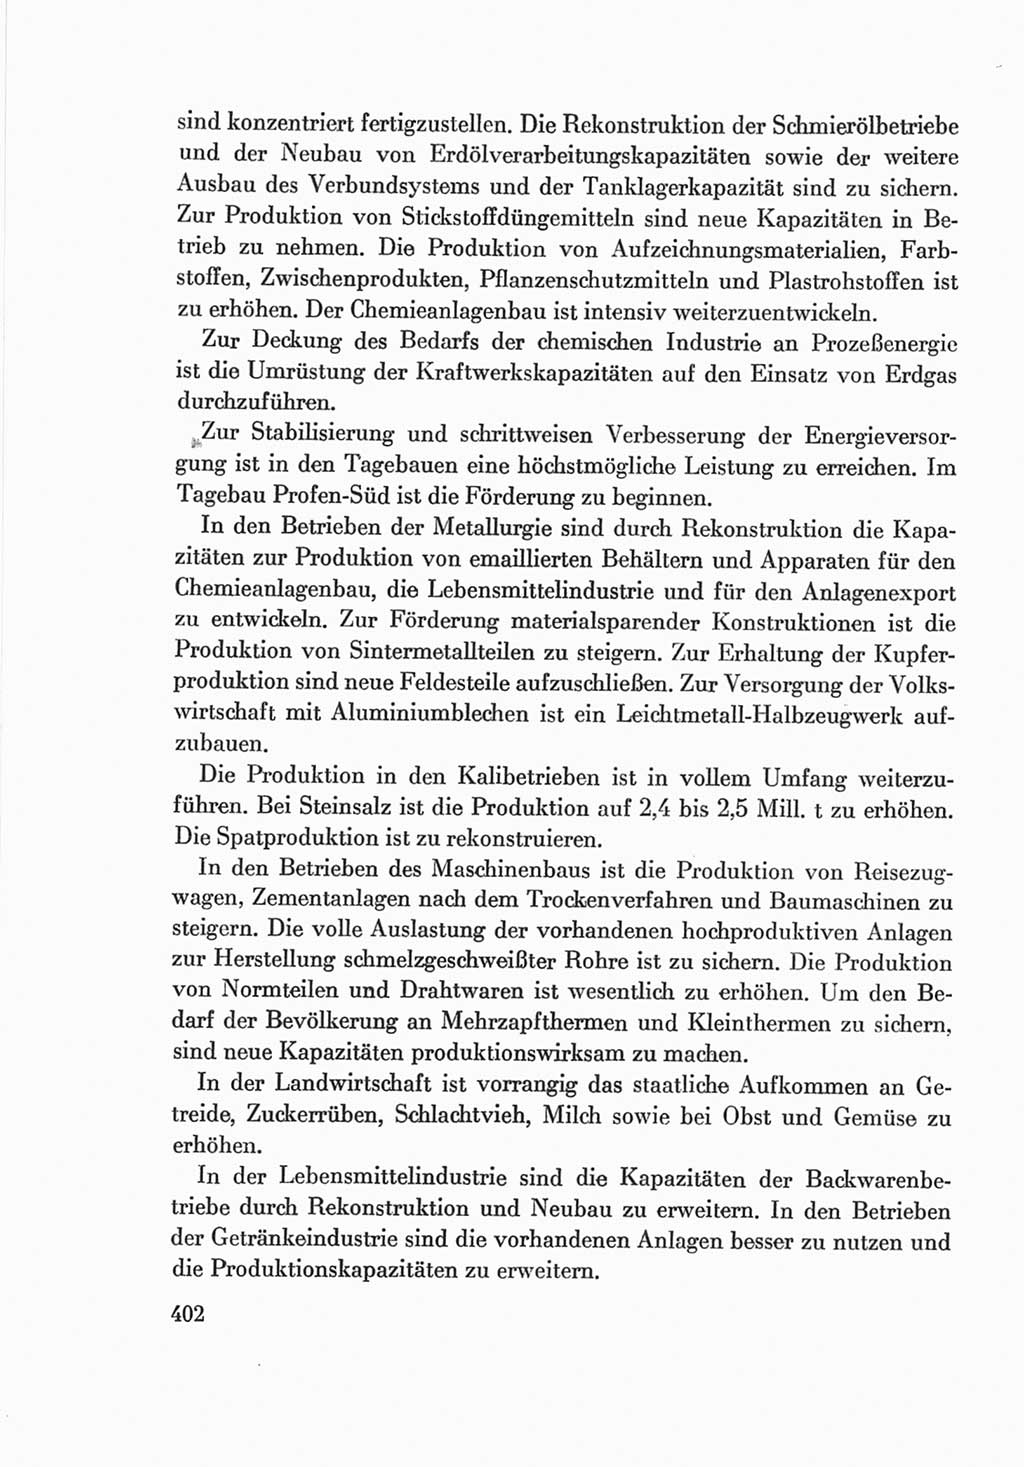 Protokoll der Verhandlungen des Ⅷ. Parteitages der Sozialistischen Einheitspartei Deutschlands (SED) [Deutsche Demokratische Republik (DDR)] 1971, Band 2, Seite 402 (Prot. Verh. Ⅷ. PT SED DDR 1971, Bd. 2, S. 402)